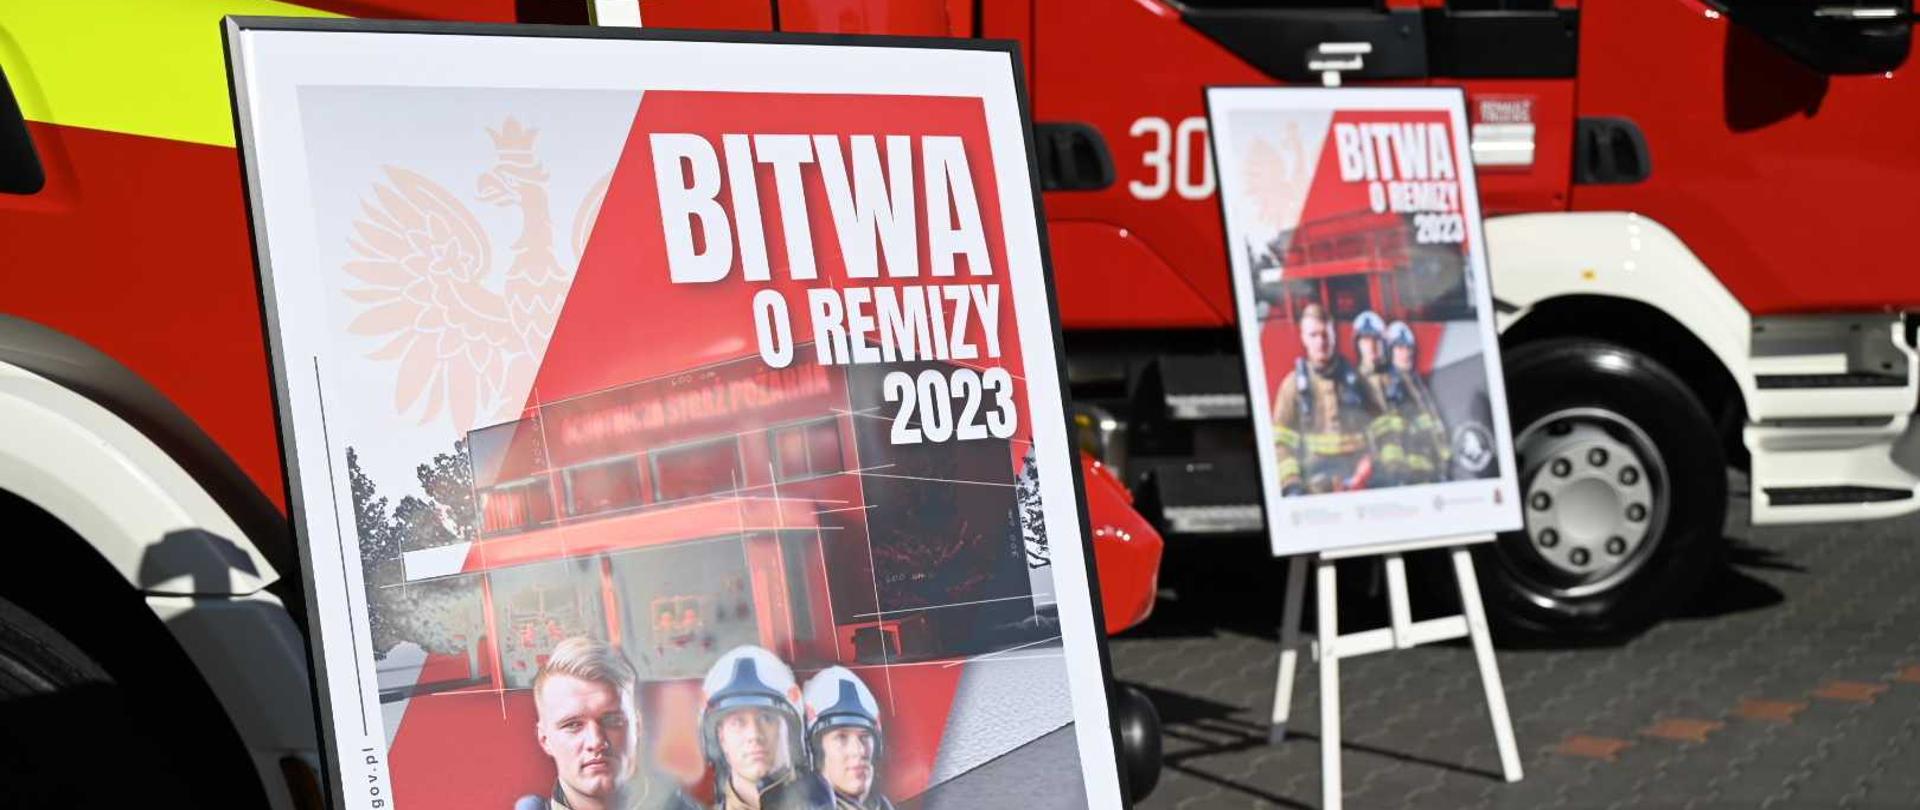 Dwa plakaty promocyjne akcji "Bitwa o Remizy 2023"; na tle dwóch pojazdów pożarniczych